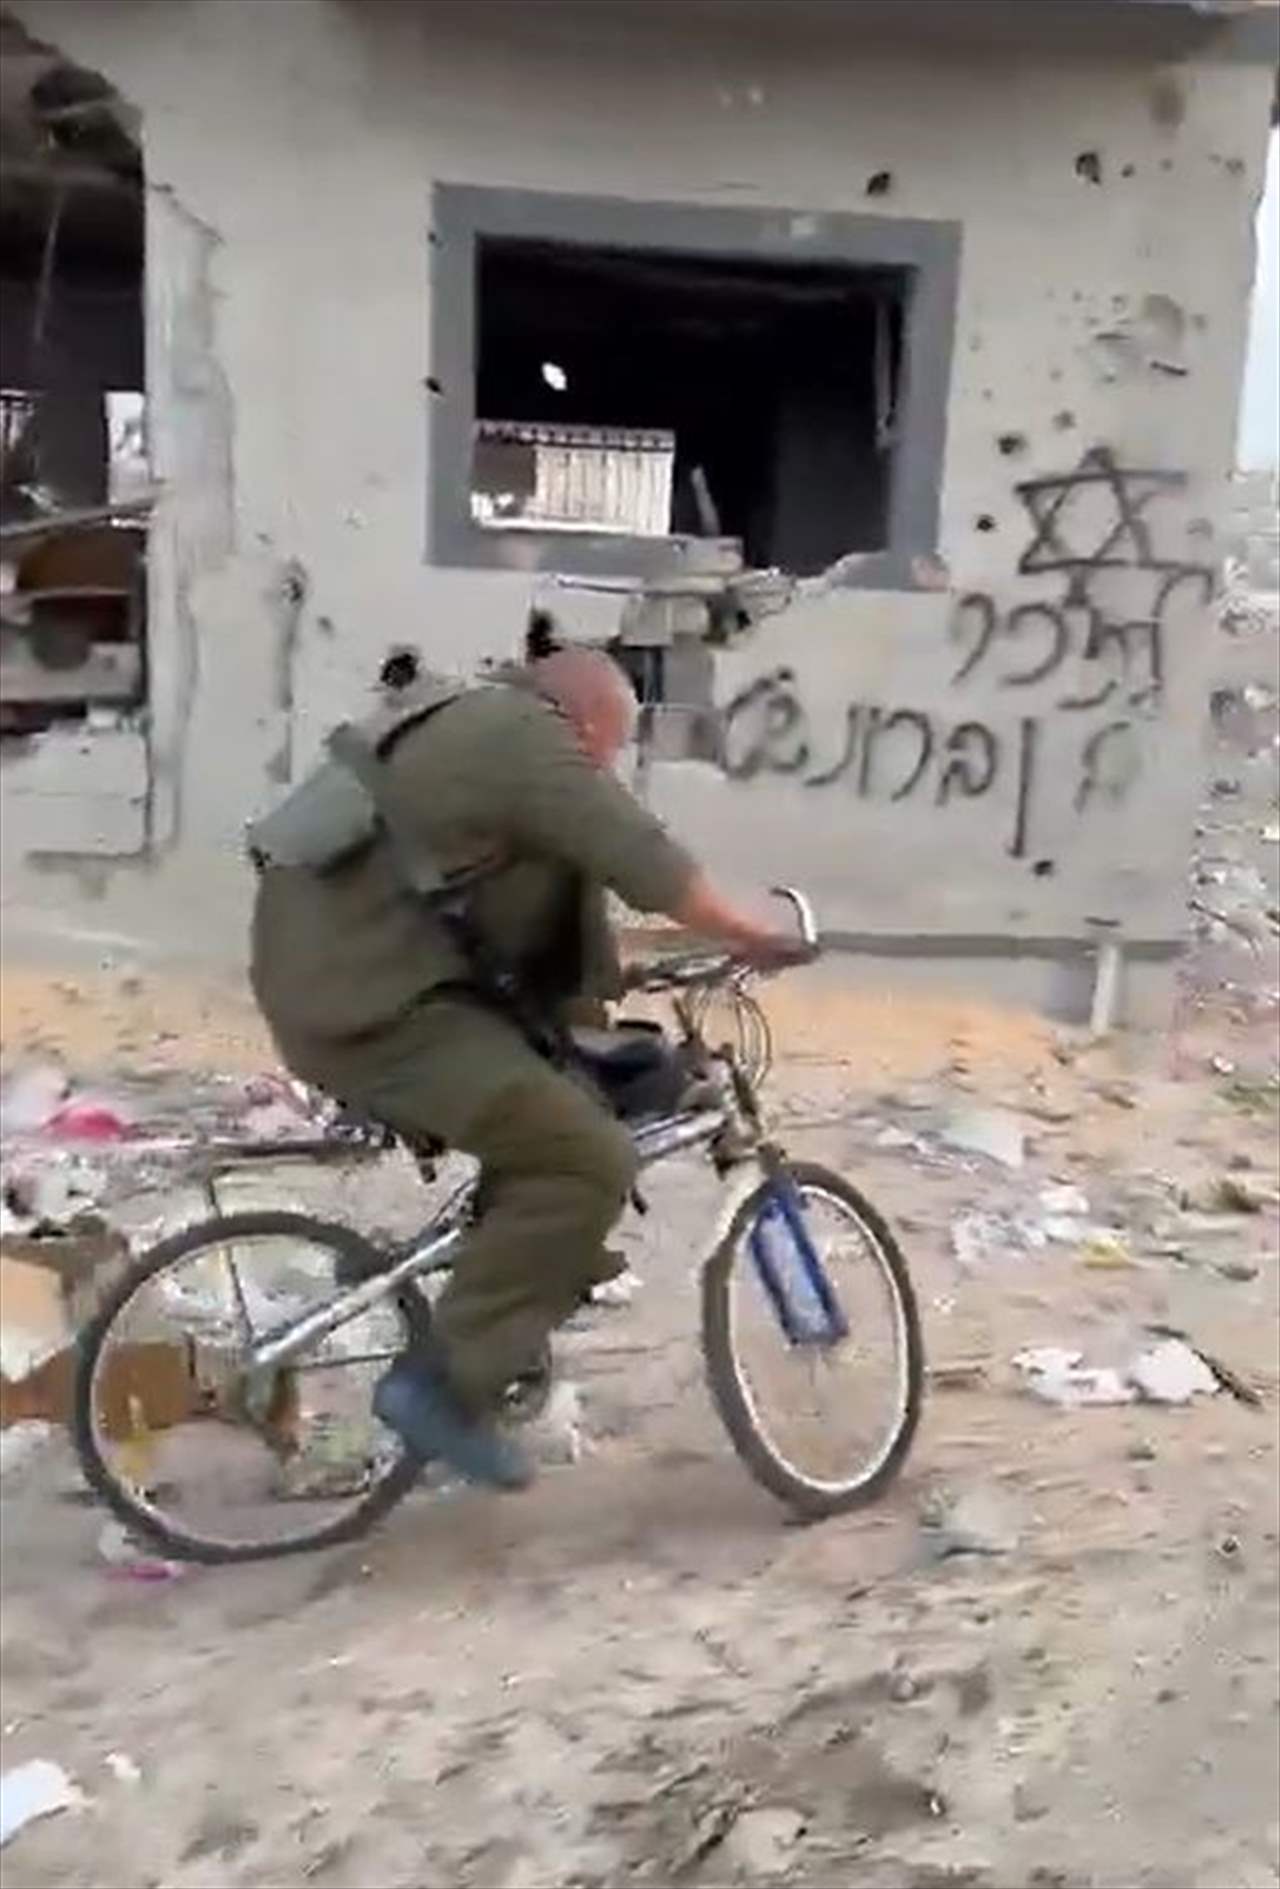 بالفيديو - جنود الإحتلال يقودون درجات هوائية لأطفال فلسطينيين فوق أنقاض المنازل المدمرة في قطاع غزة